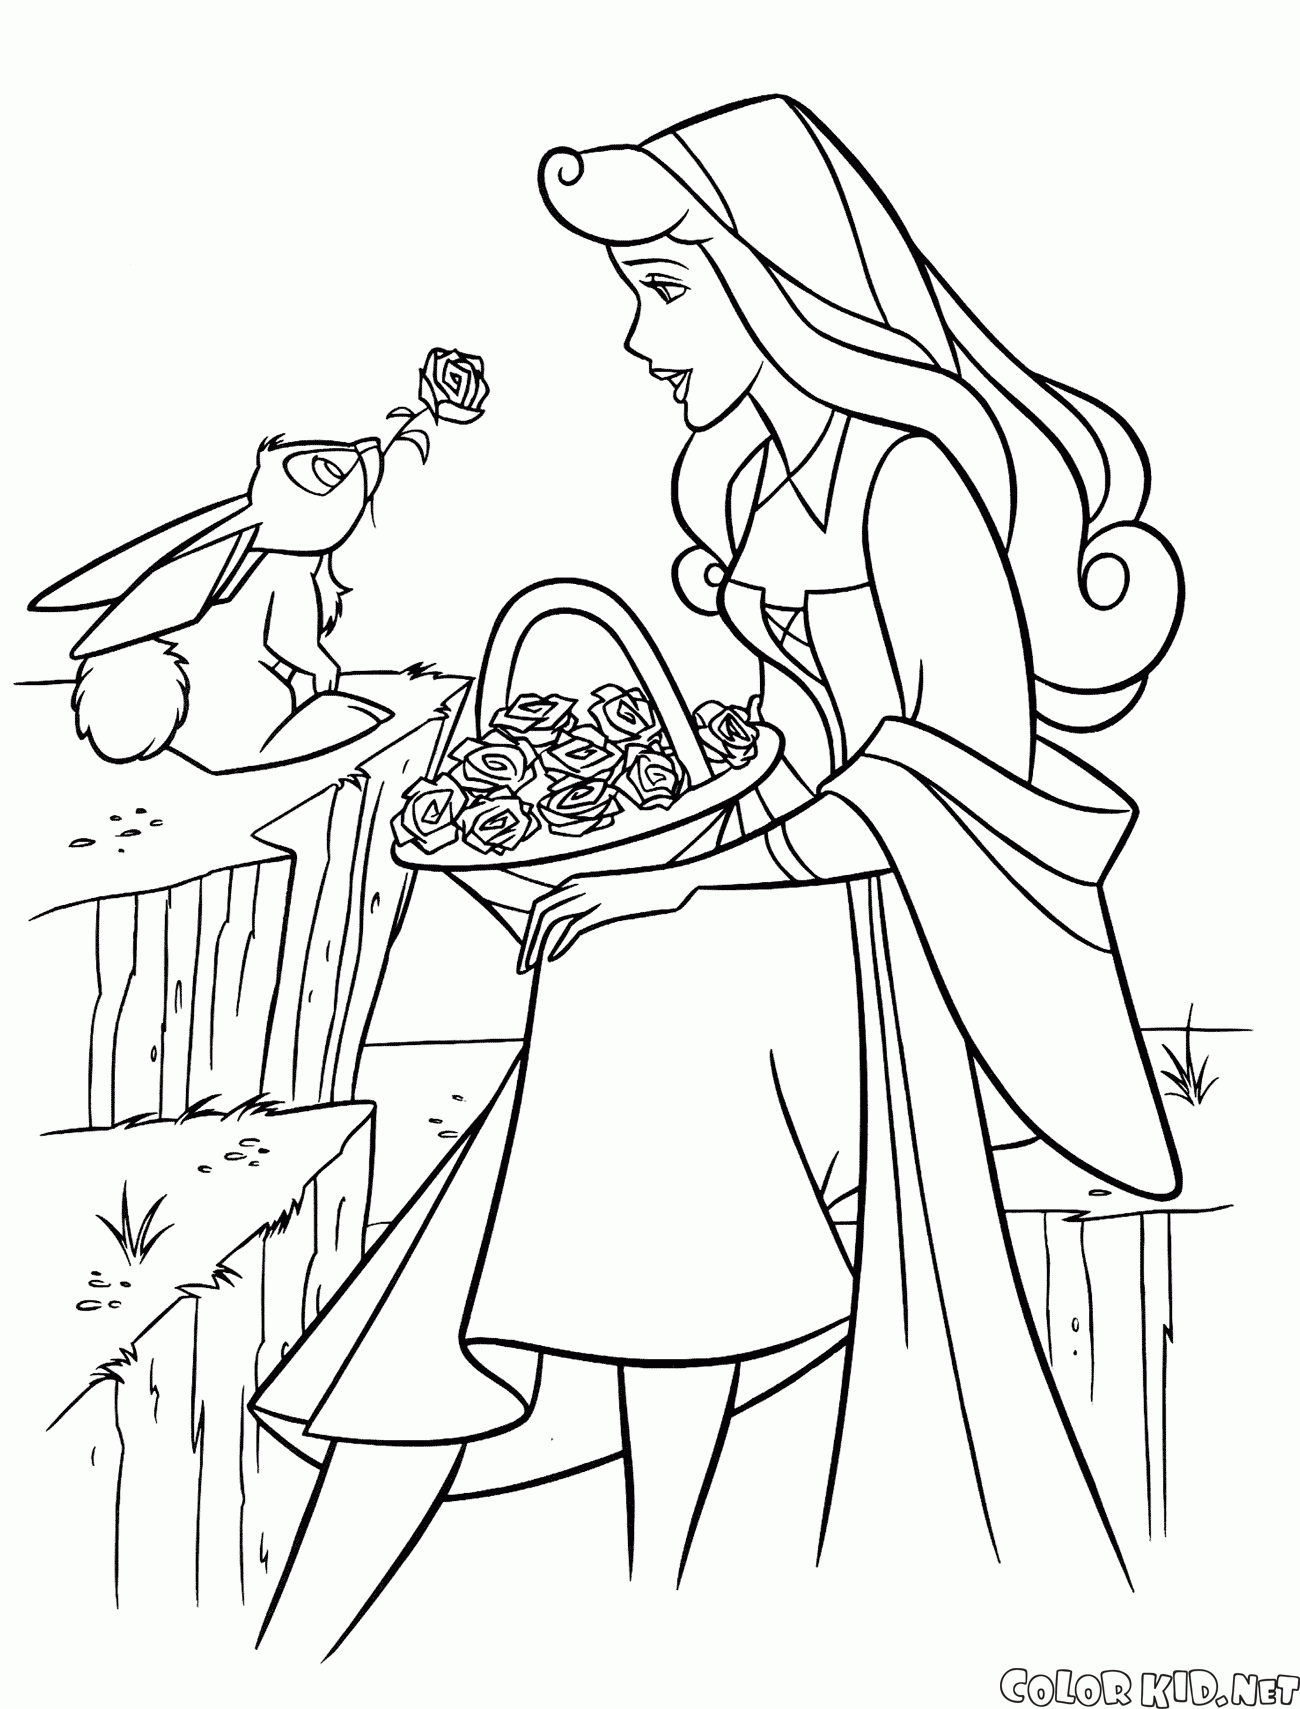 オーロラ姫とウサギ